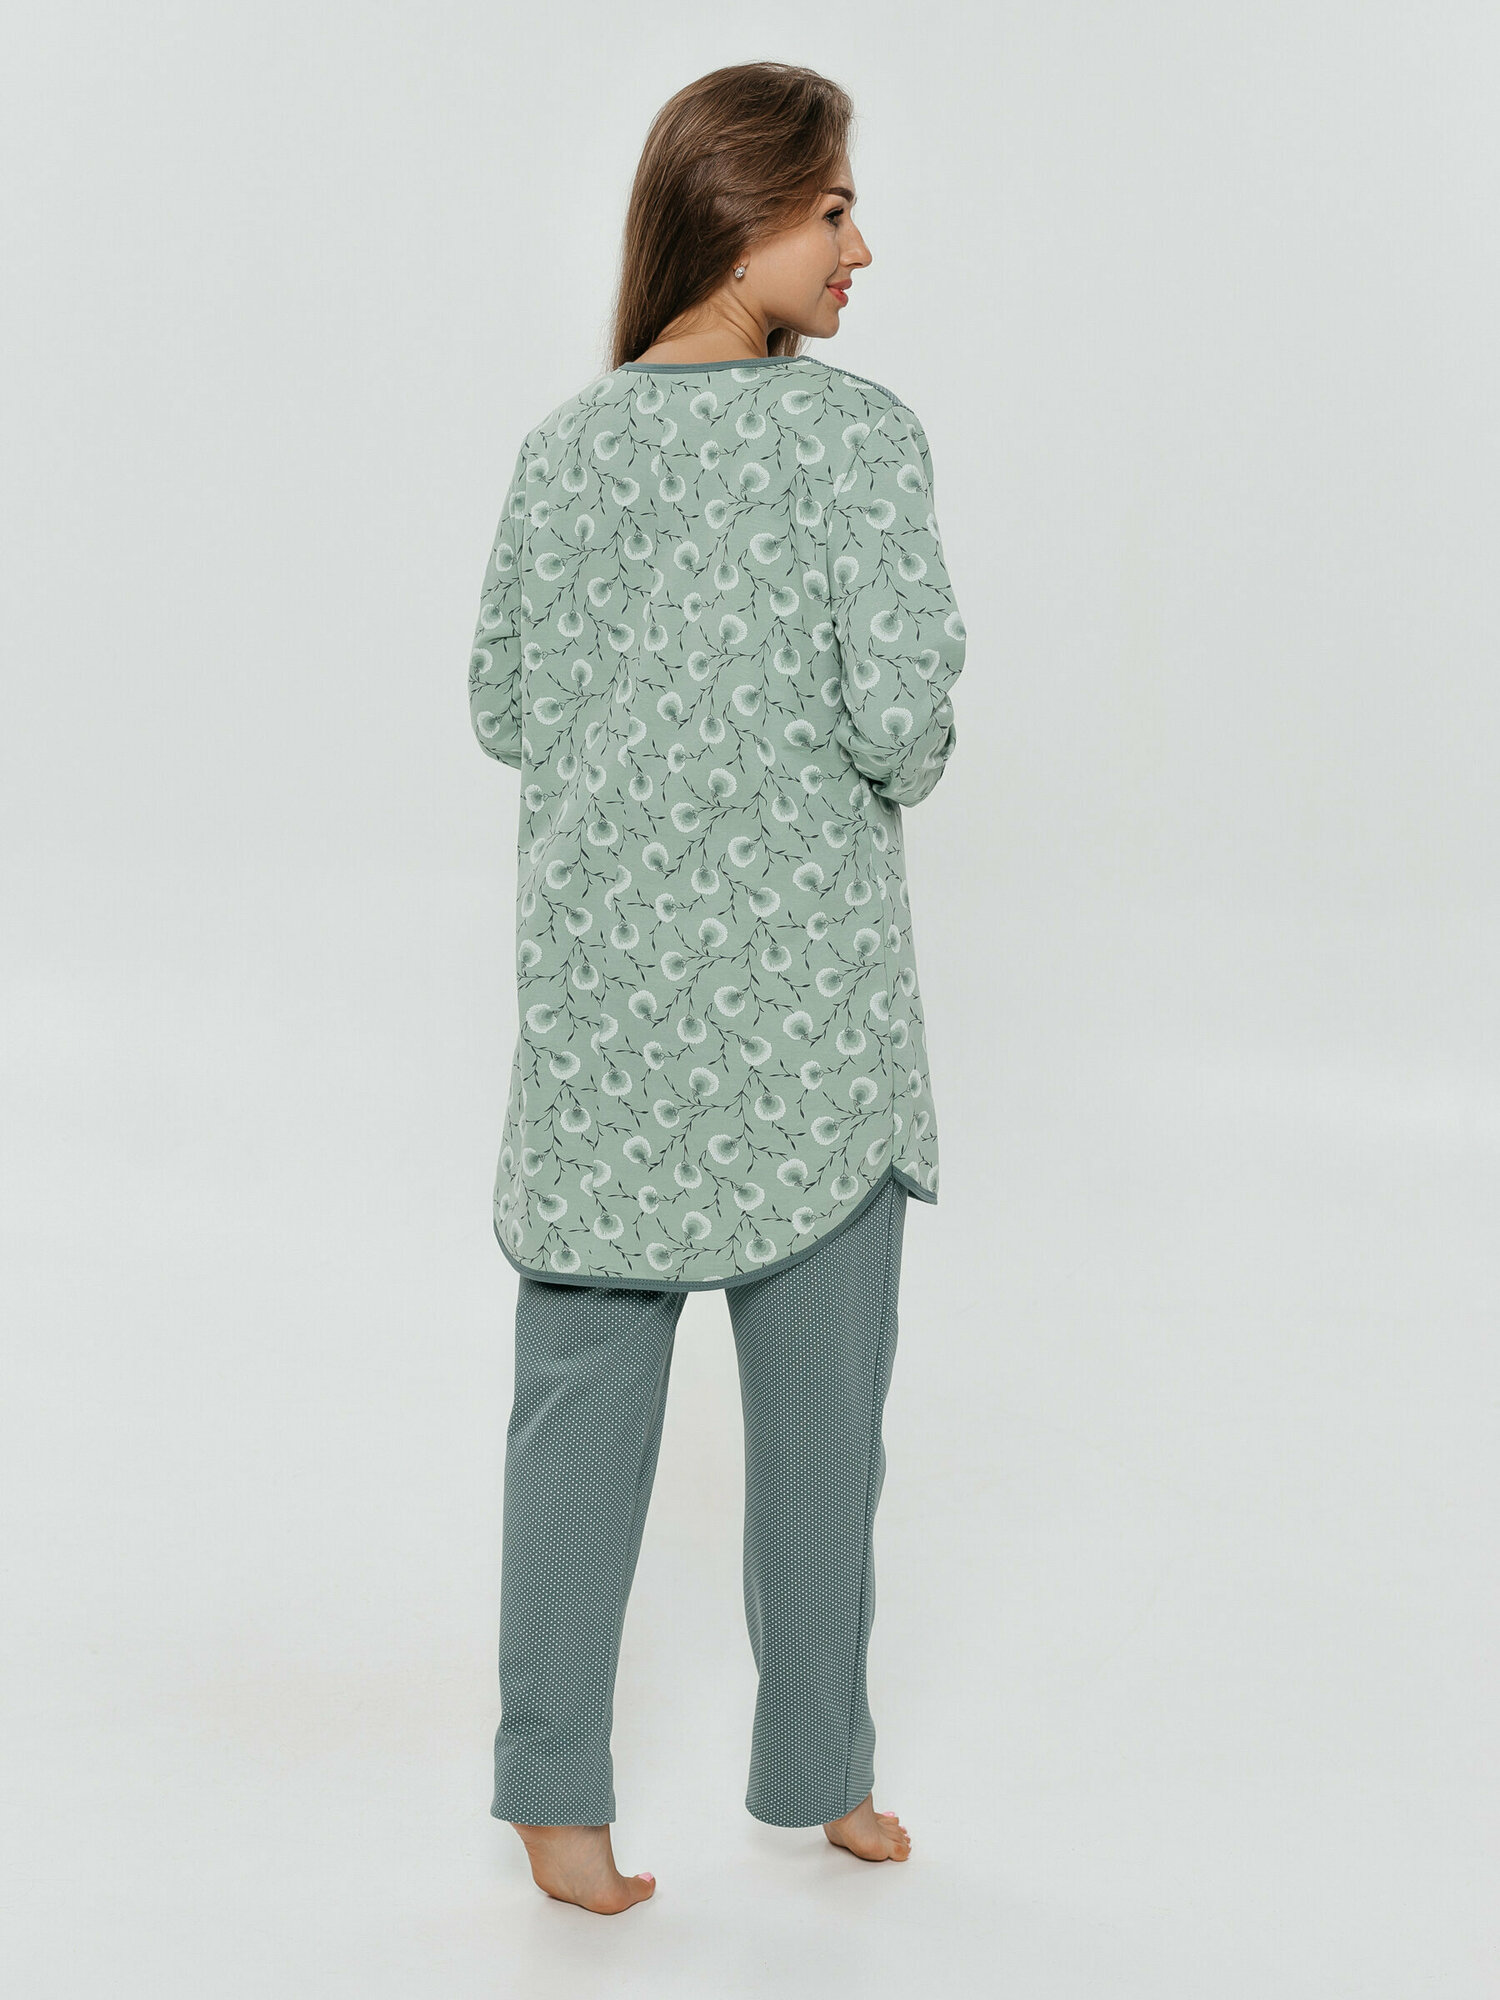 Пижама LOVETEX.STORE, рубашка, брюки, длинный рукав, трикотажная, утепленная, пояс на резинке, размер 60, зеленый - фотография № 5